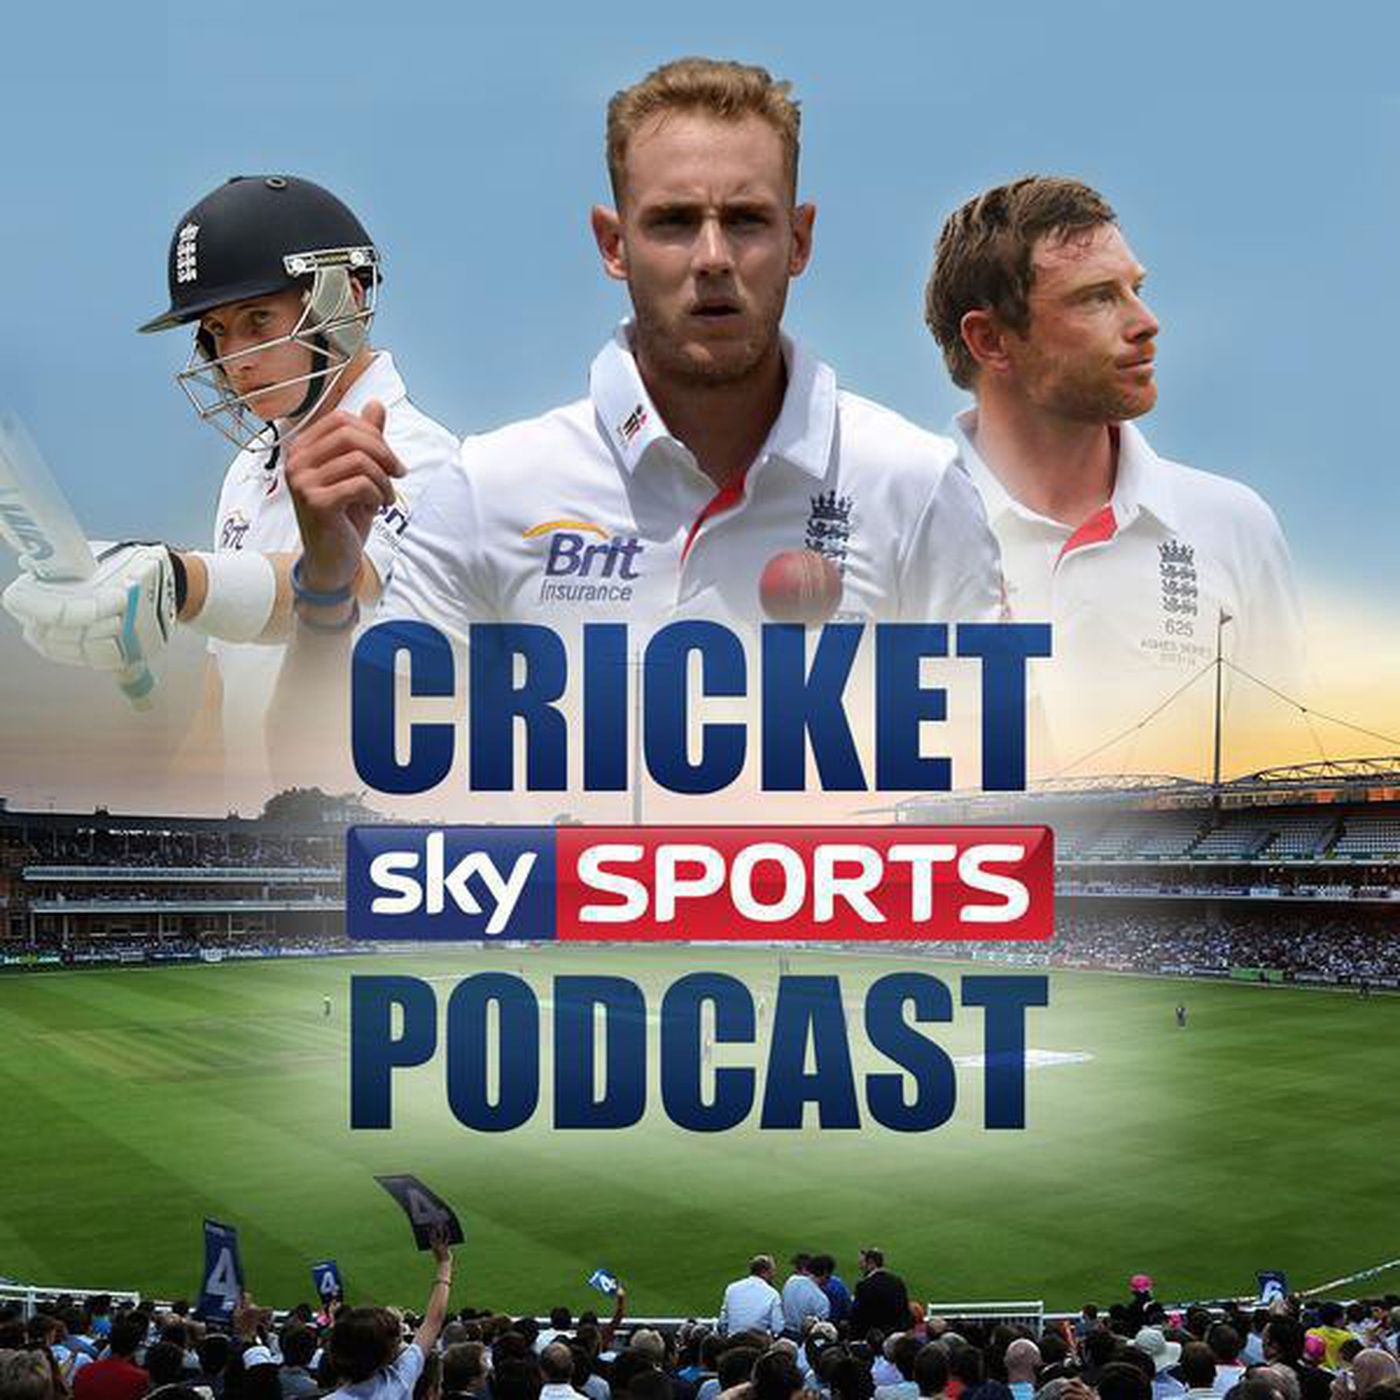 Sky Sports Cricket Podcast - 24th January